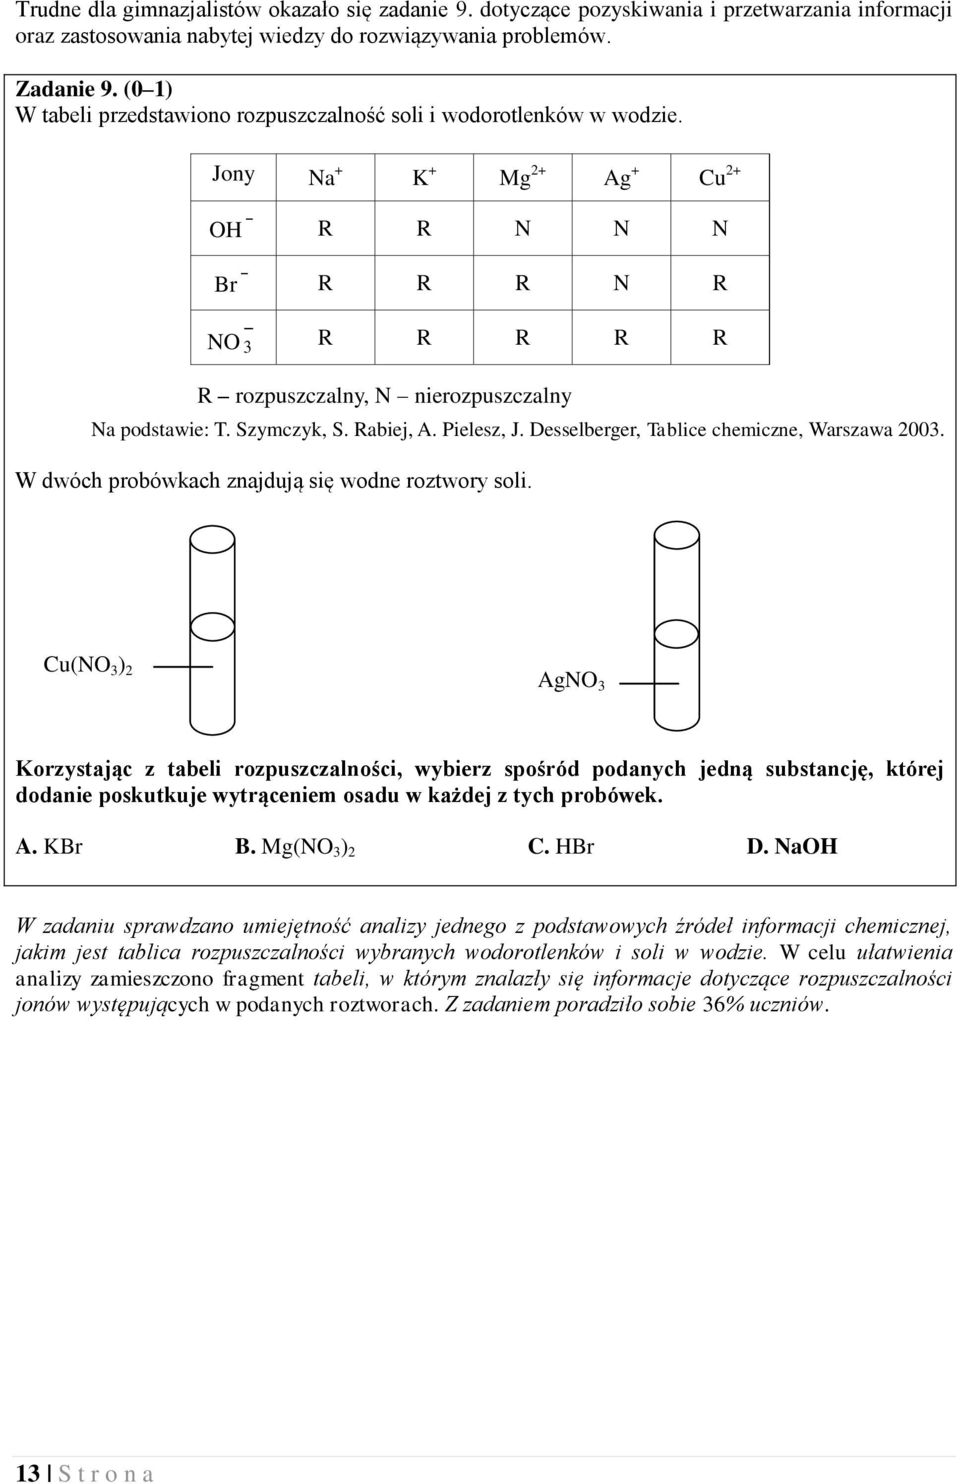 Szymczyk, S. Rabiej, A. Pielesz, J. Desselberger, Tablice chemiczne, Warszawa 2003. W dwóch probówkach znajdują się wodne roztwory soli.